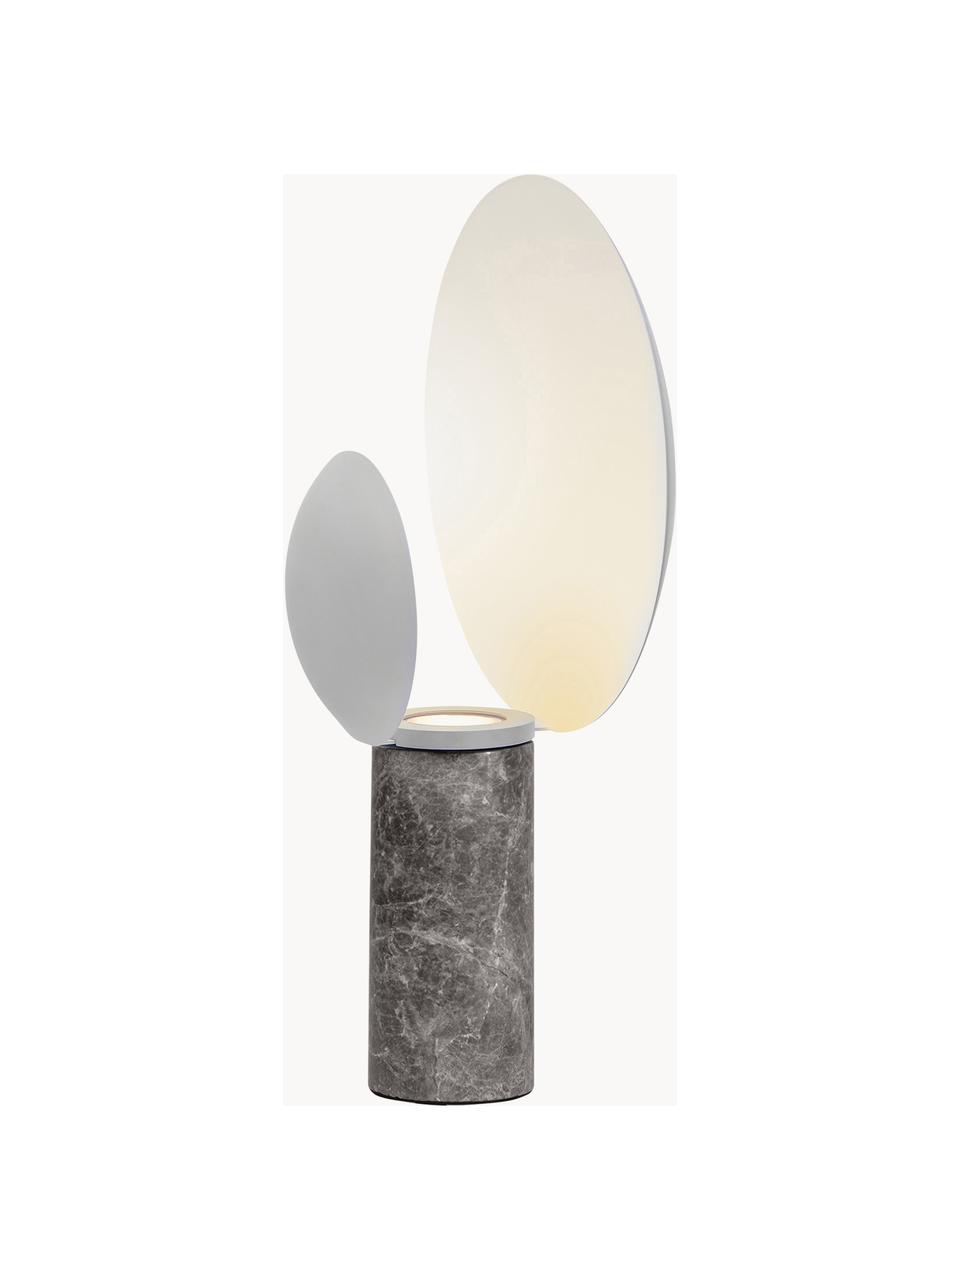 Tafellamp Cache met marmeren voet, Lampenkap: gecoat metaal, Lampvoet: marmer, Lichtgrijs, gemarmerd, Ø 30 x H 49 cm